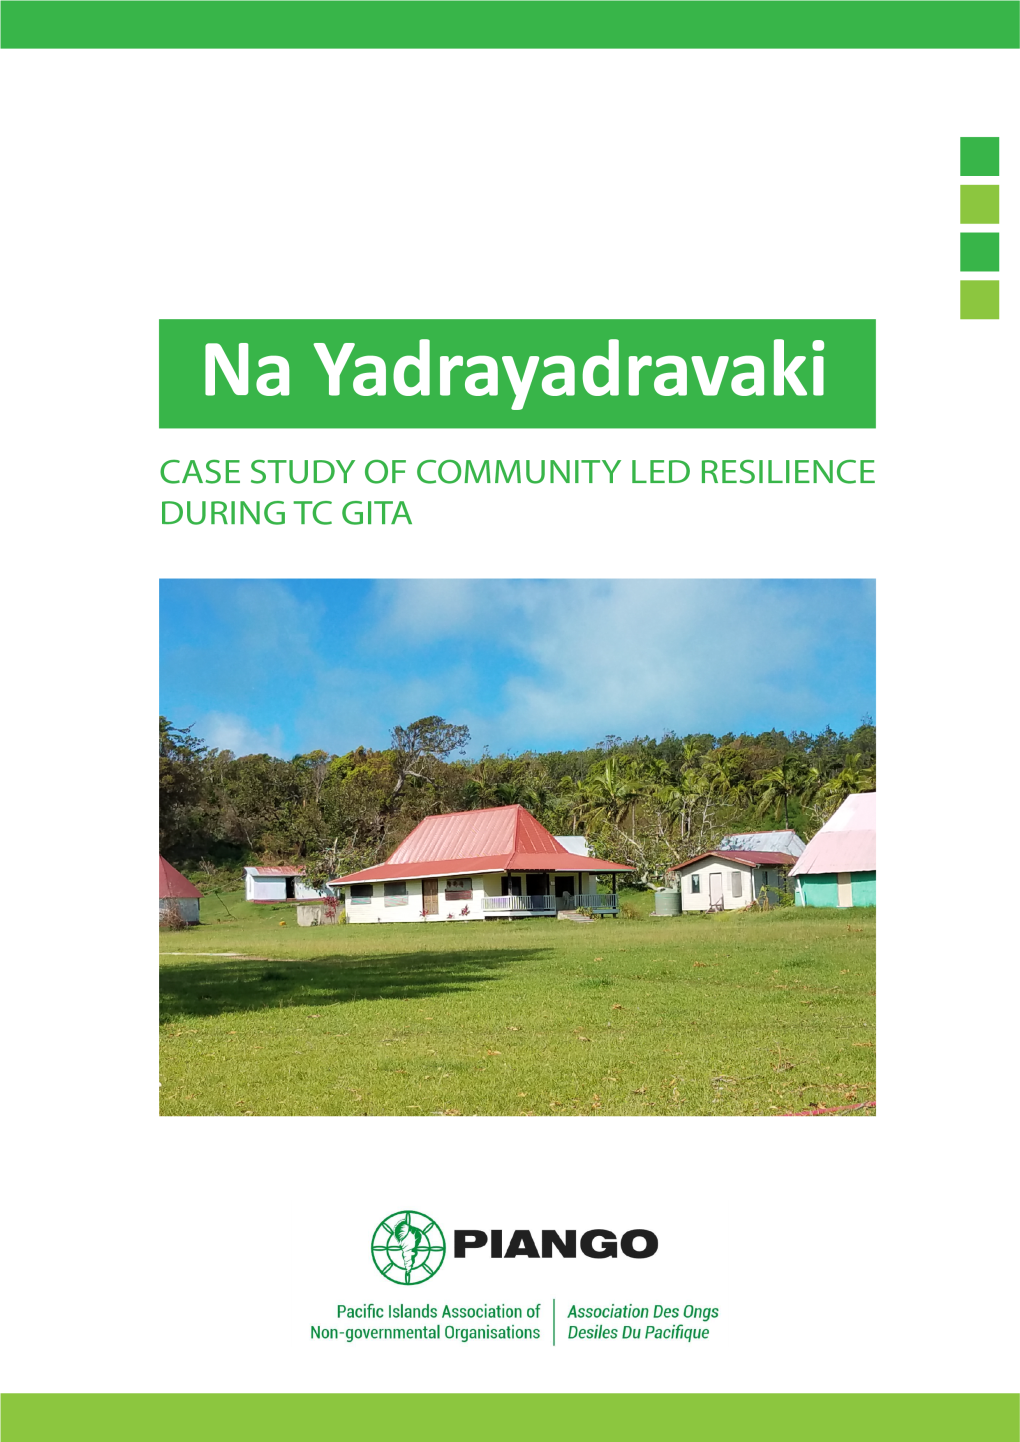 Na Yadrayadravaki Case Study of Community Led Resilience During TC Gita